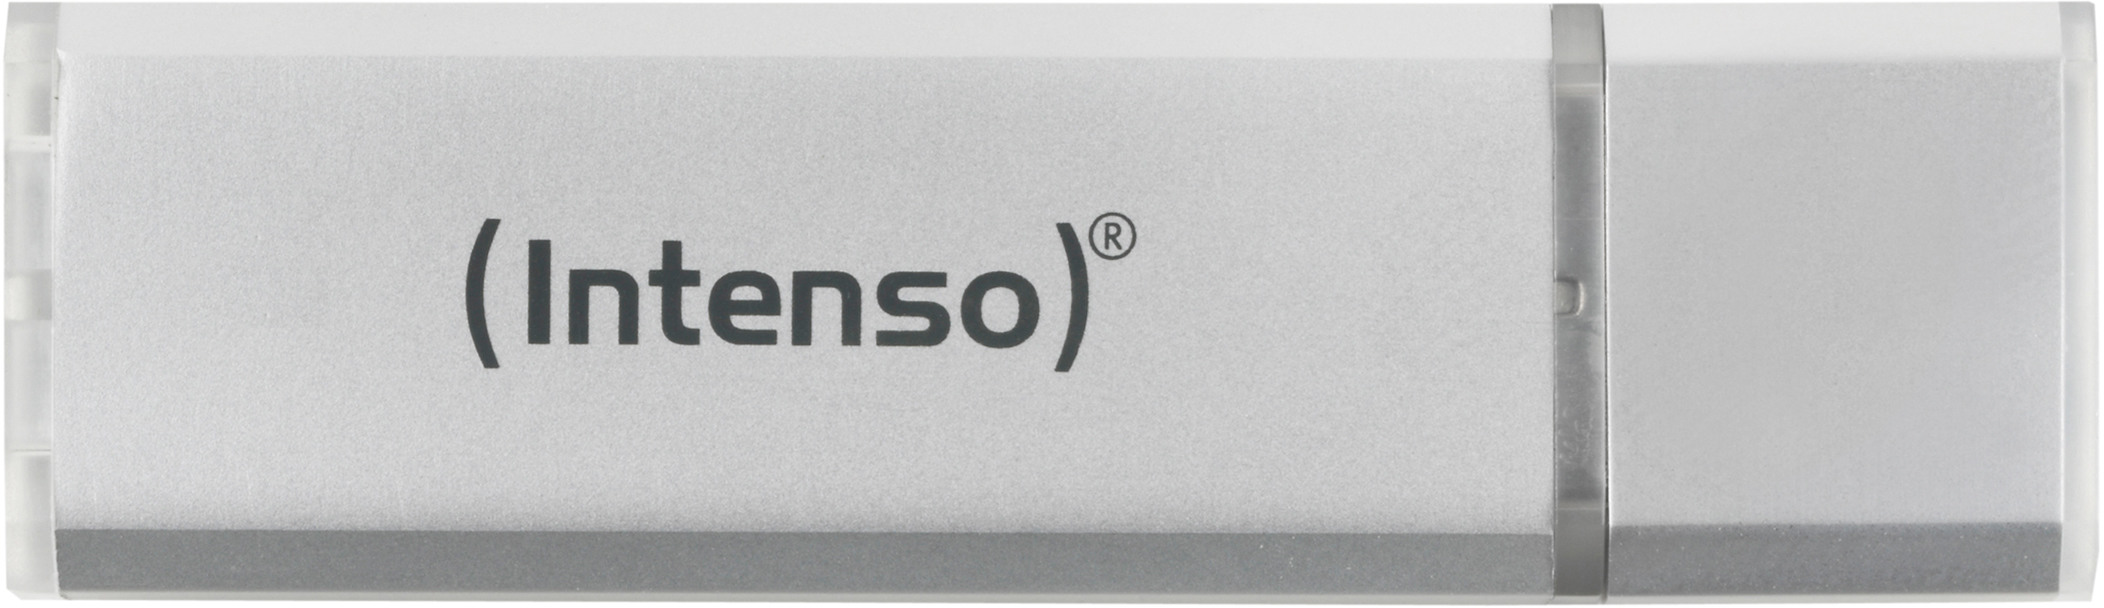 INTENSO USB-Stick Alu Line 64GB 3521492 USB 2.0 silver